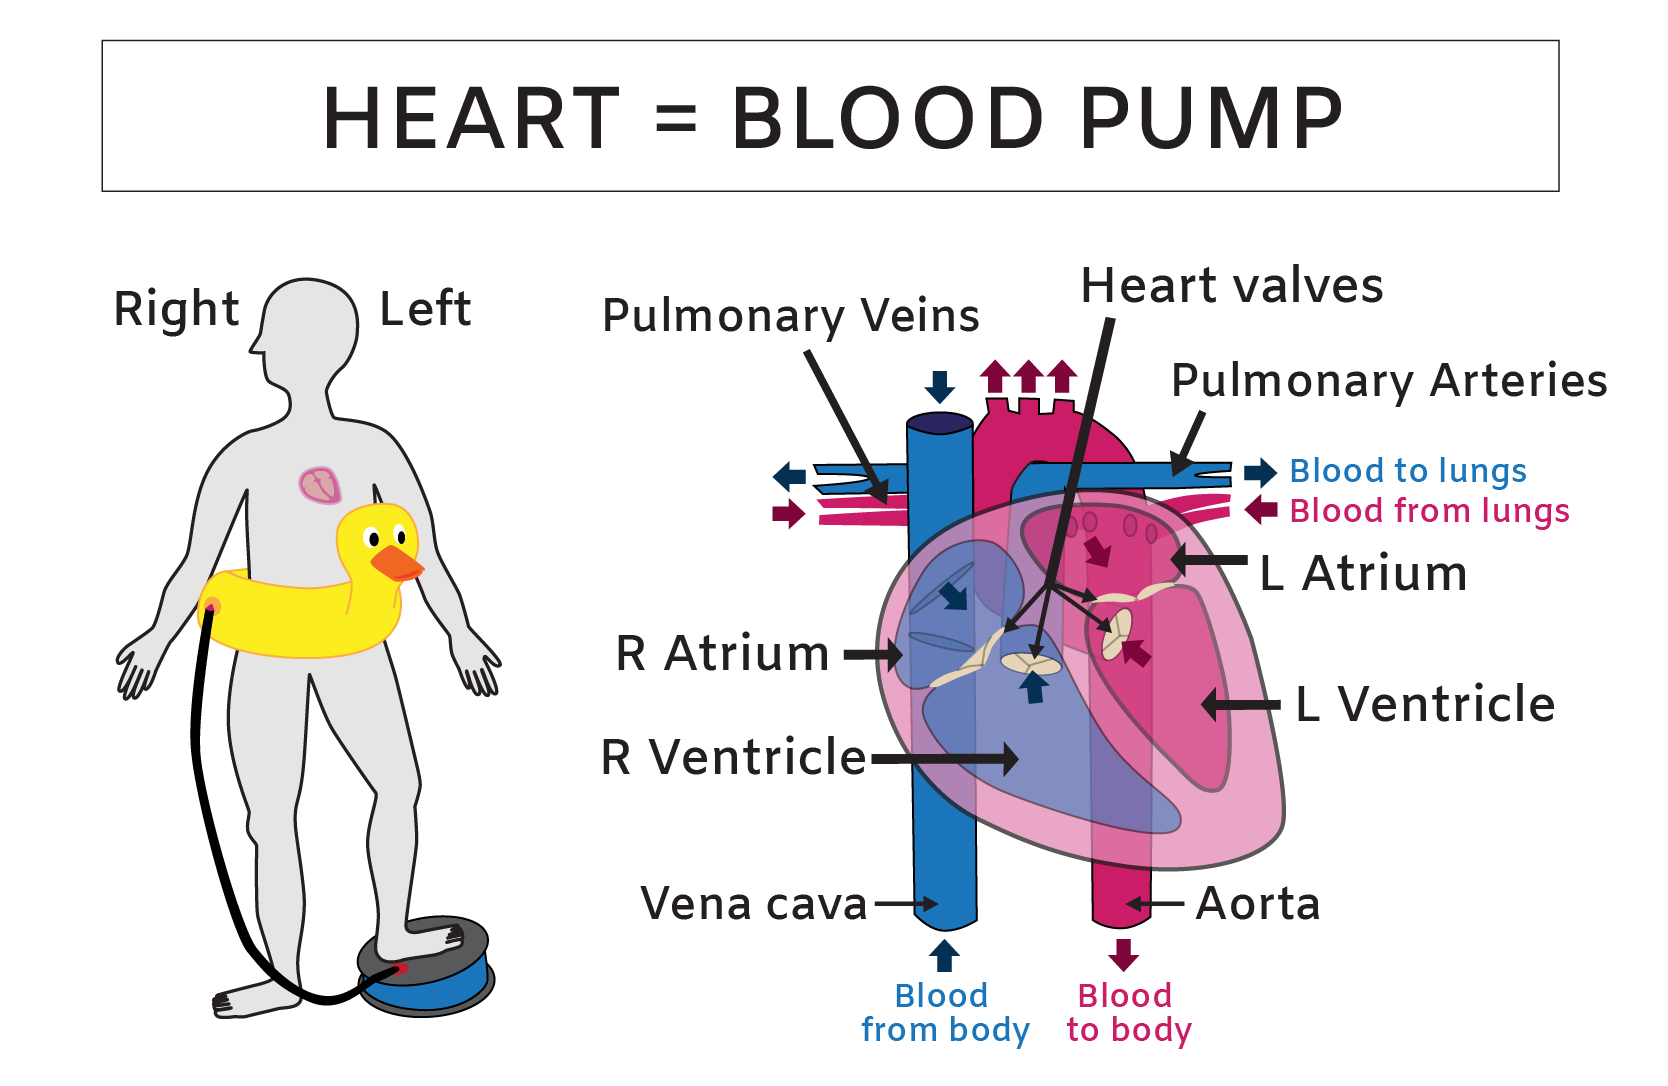 Human heart anatomy illustration